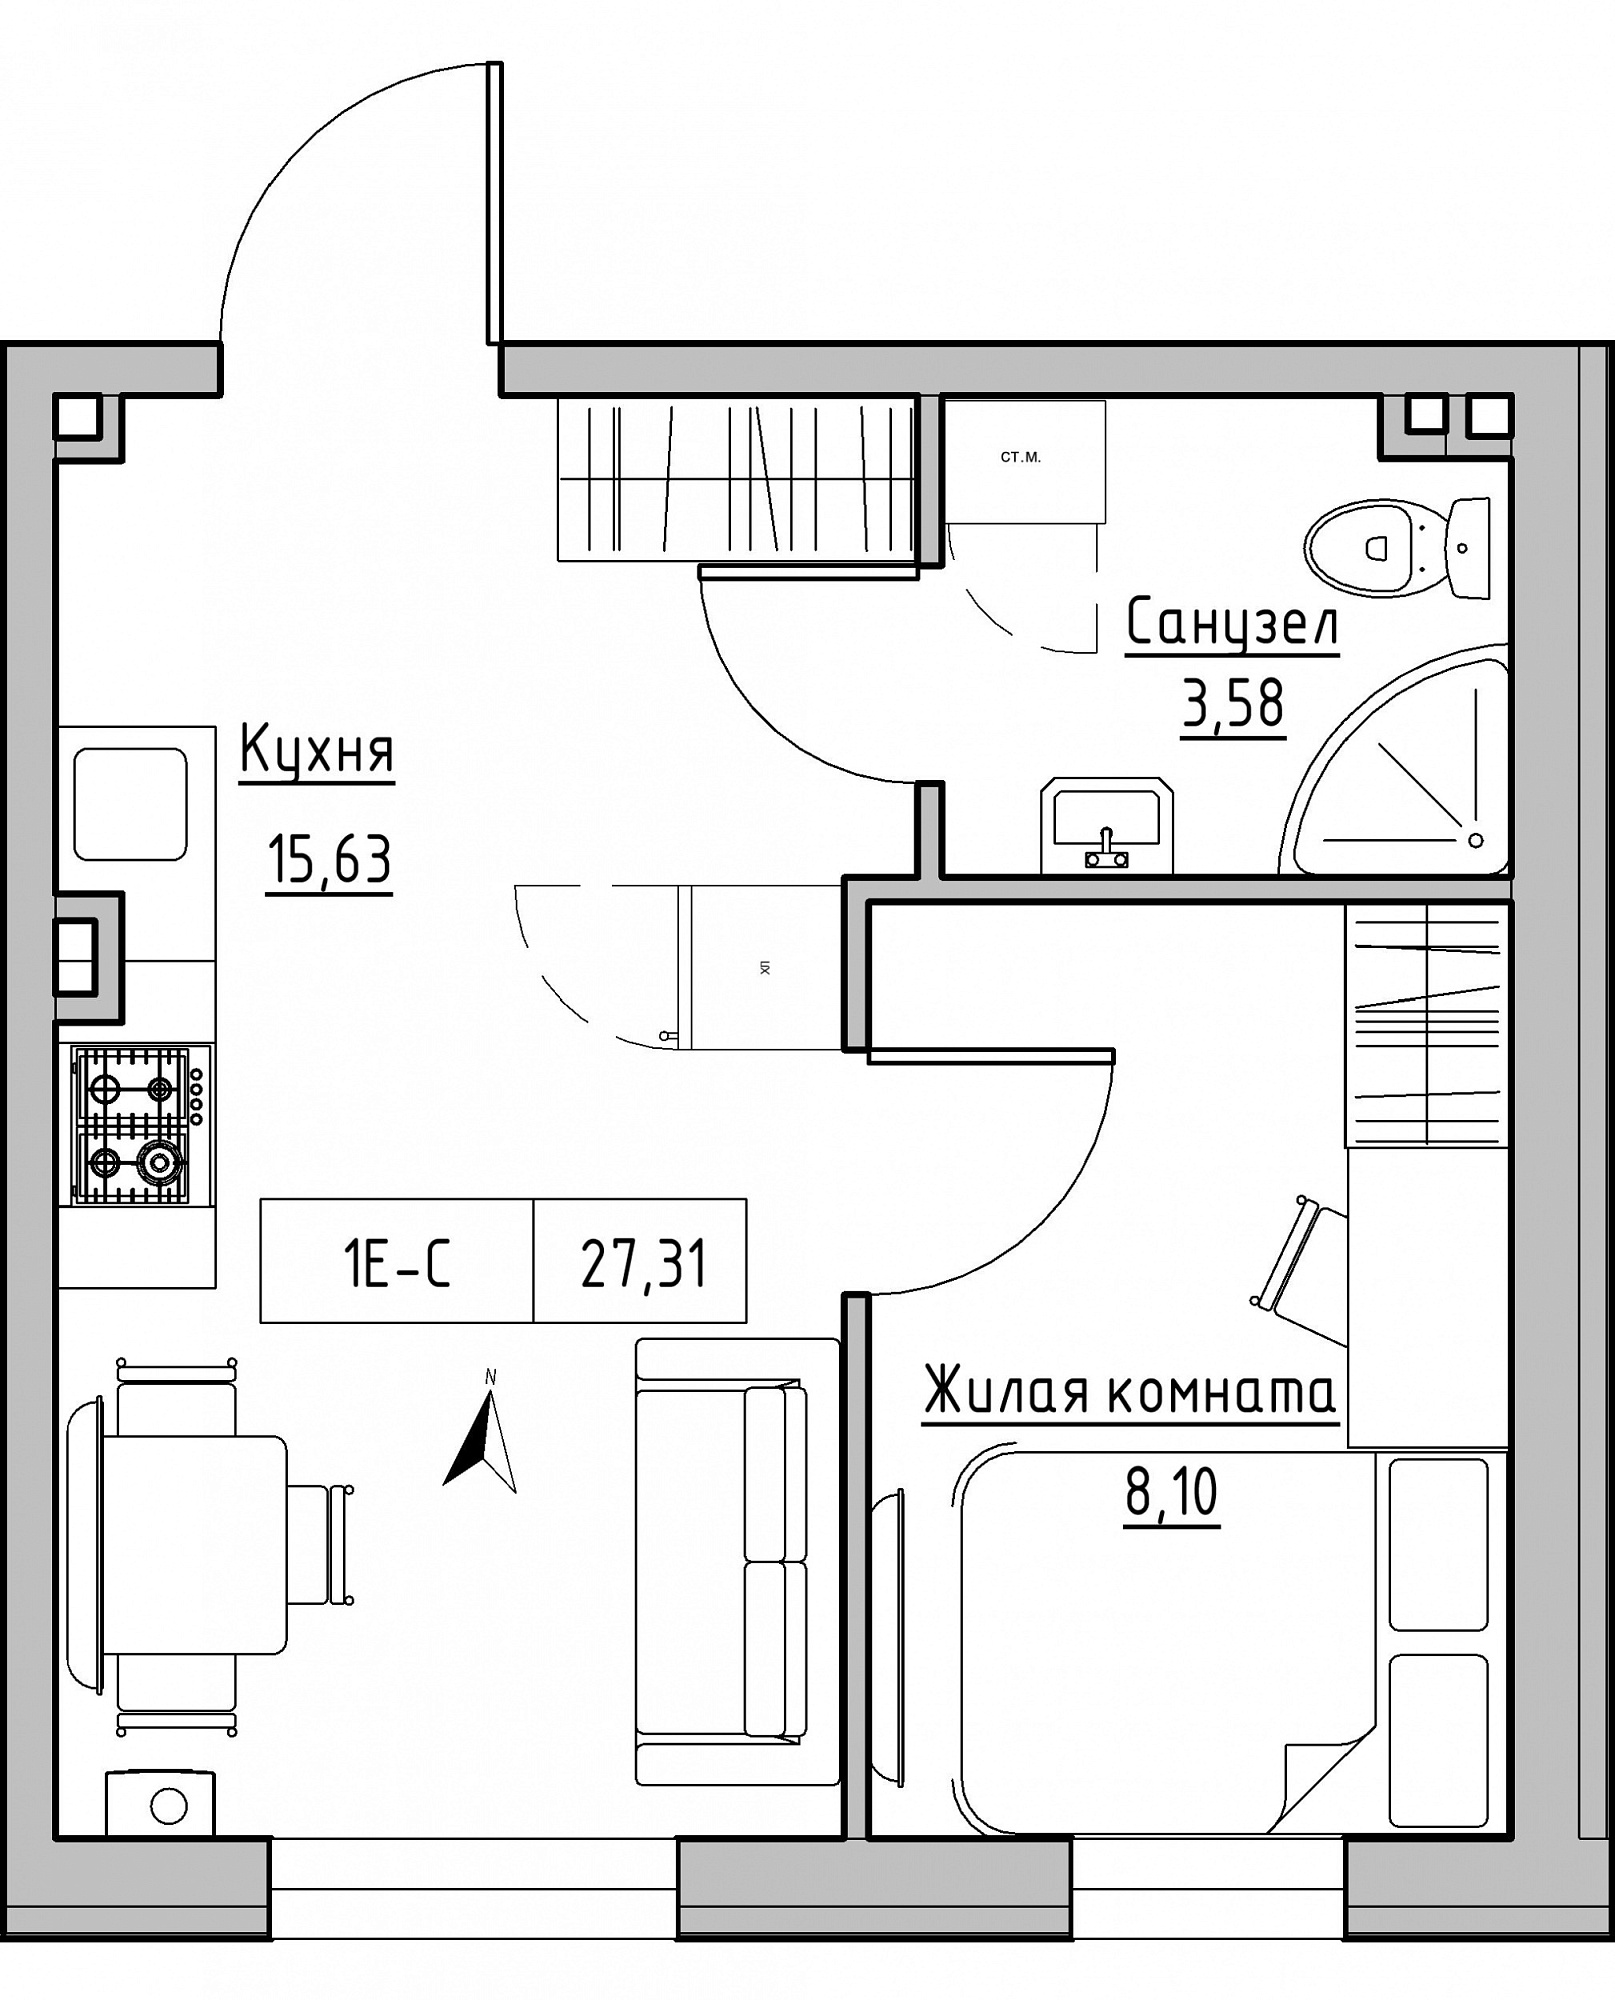 Планування 1-к квартира площею 27.31м2, KS-024-03/0004.